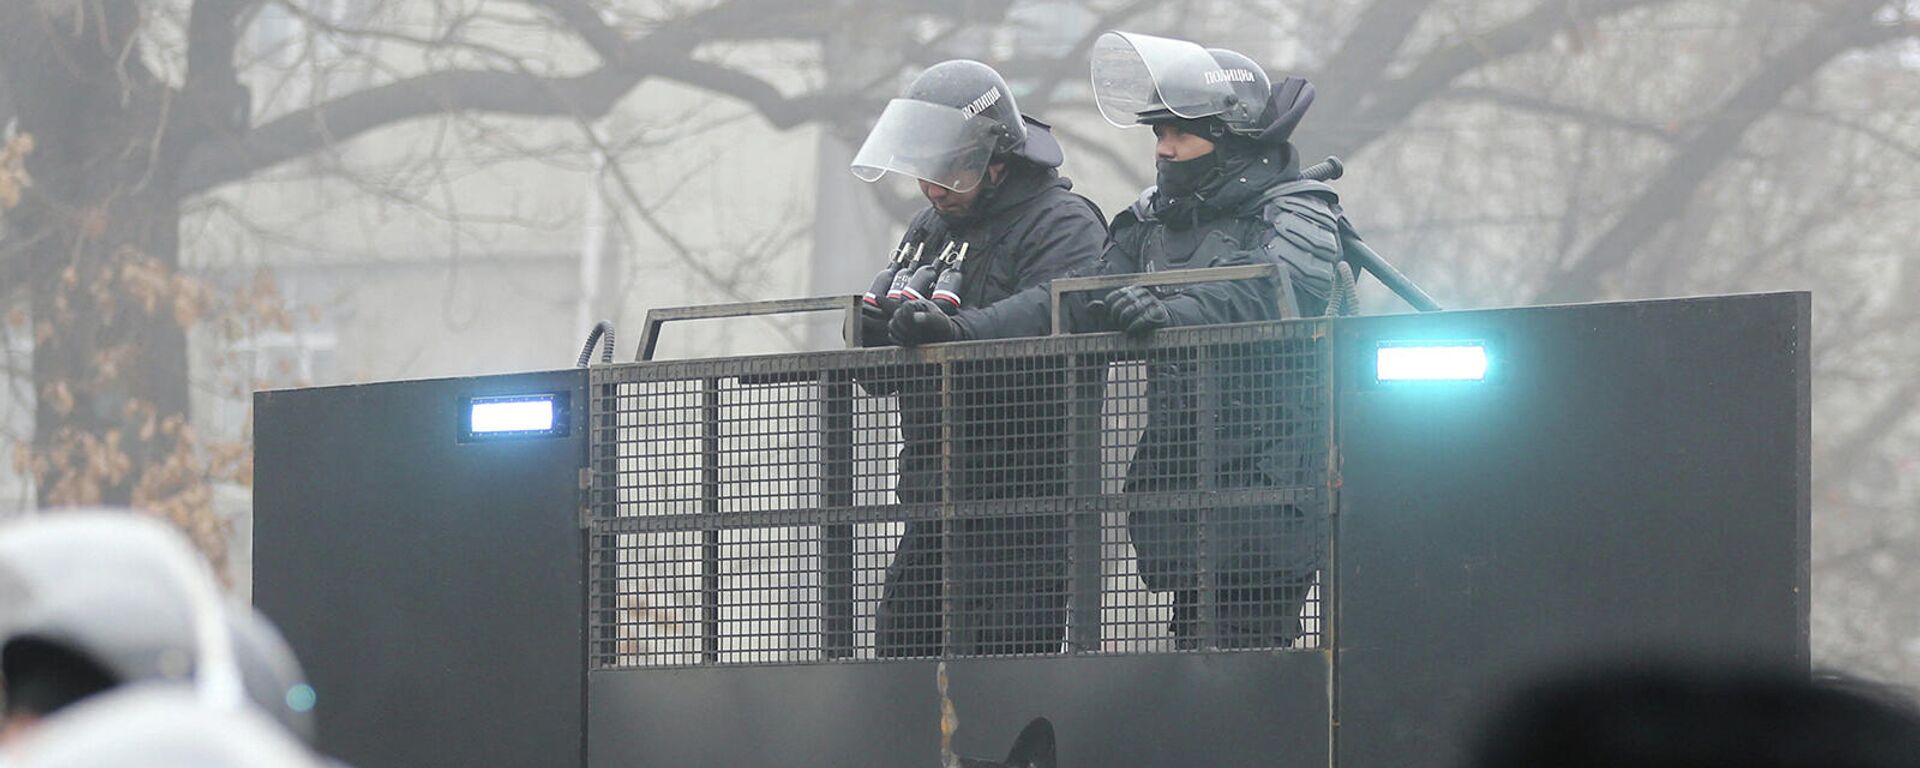 Казахстанские правоохранители на баррикаде во время акции протеста (5 января 2022). Алматы - Sputnik Армения, 1920, 06.01.2022